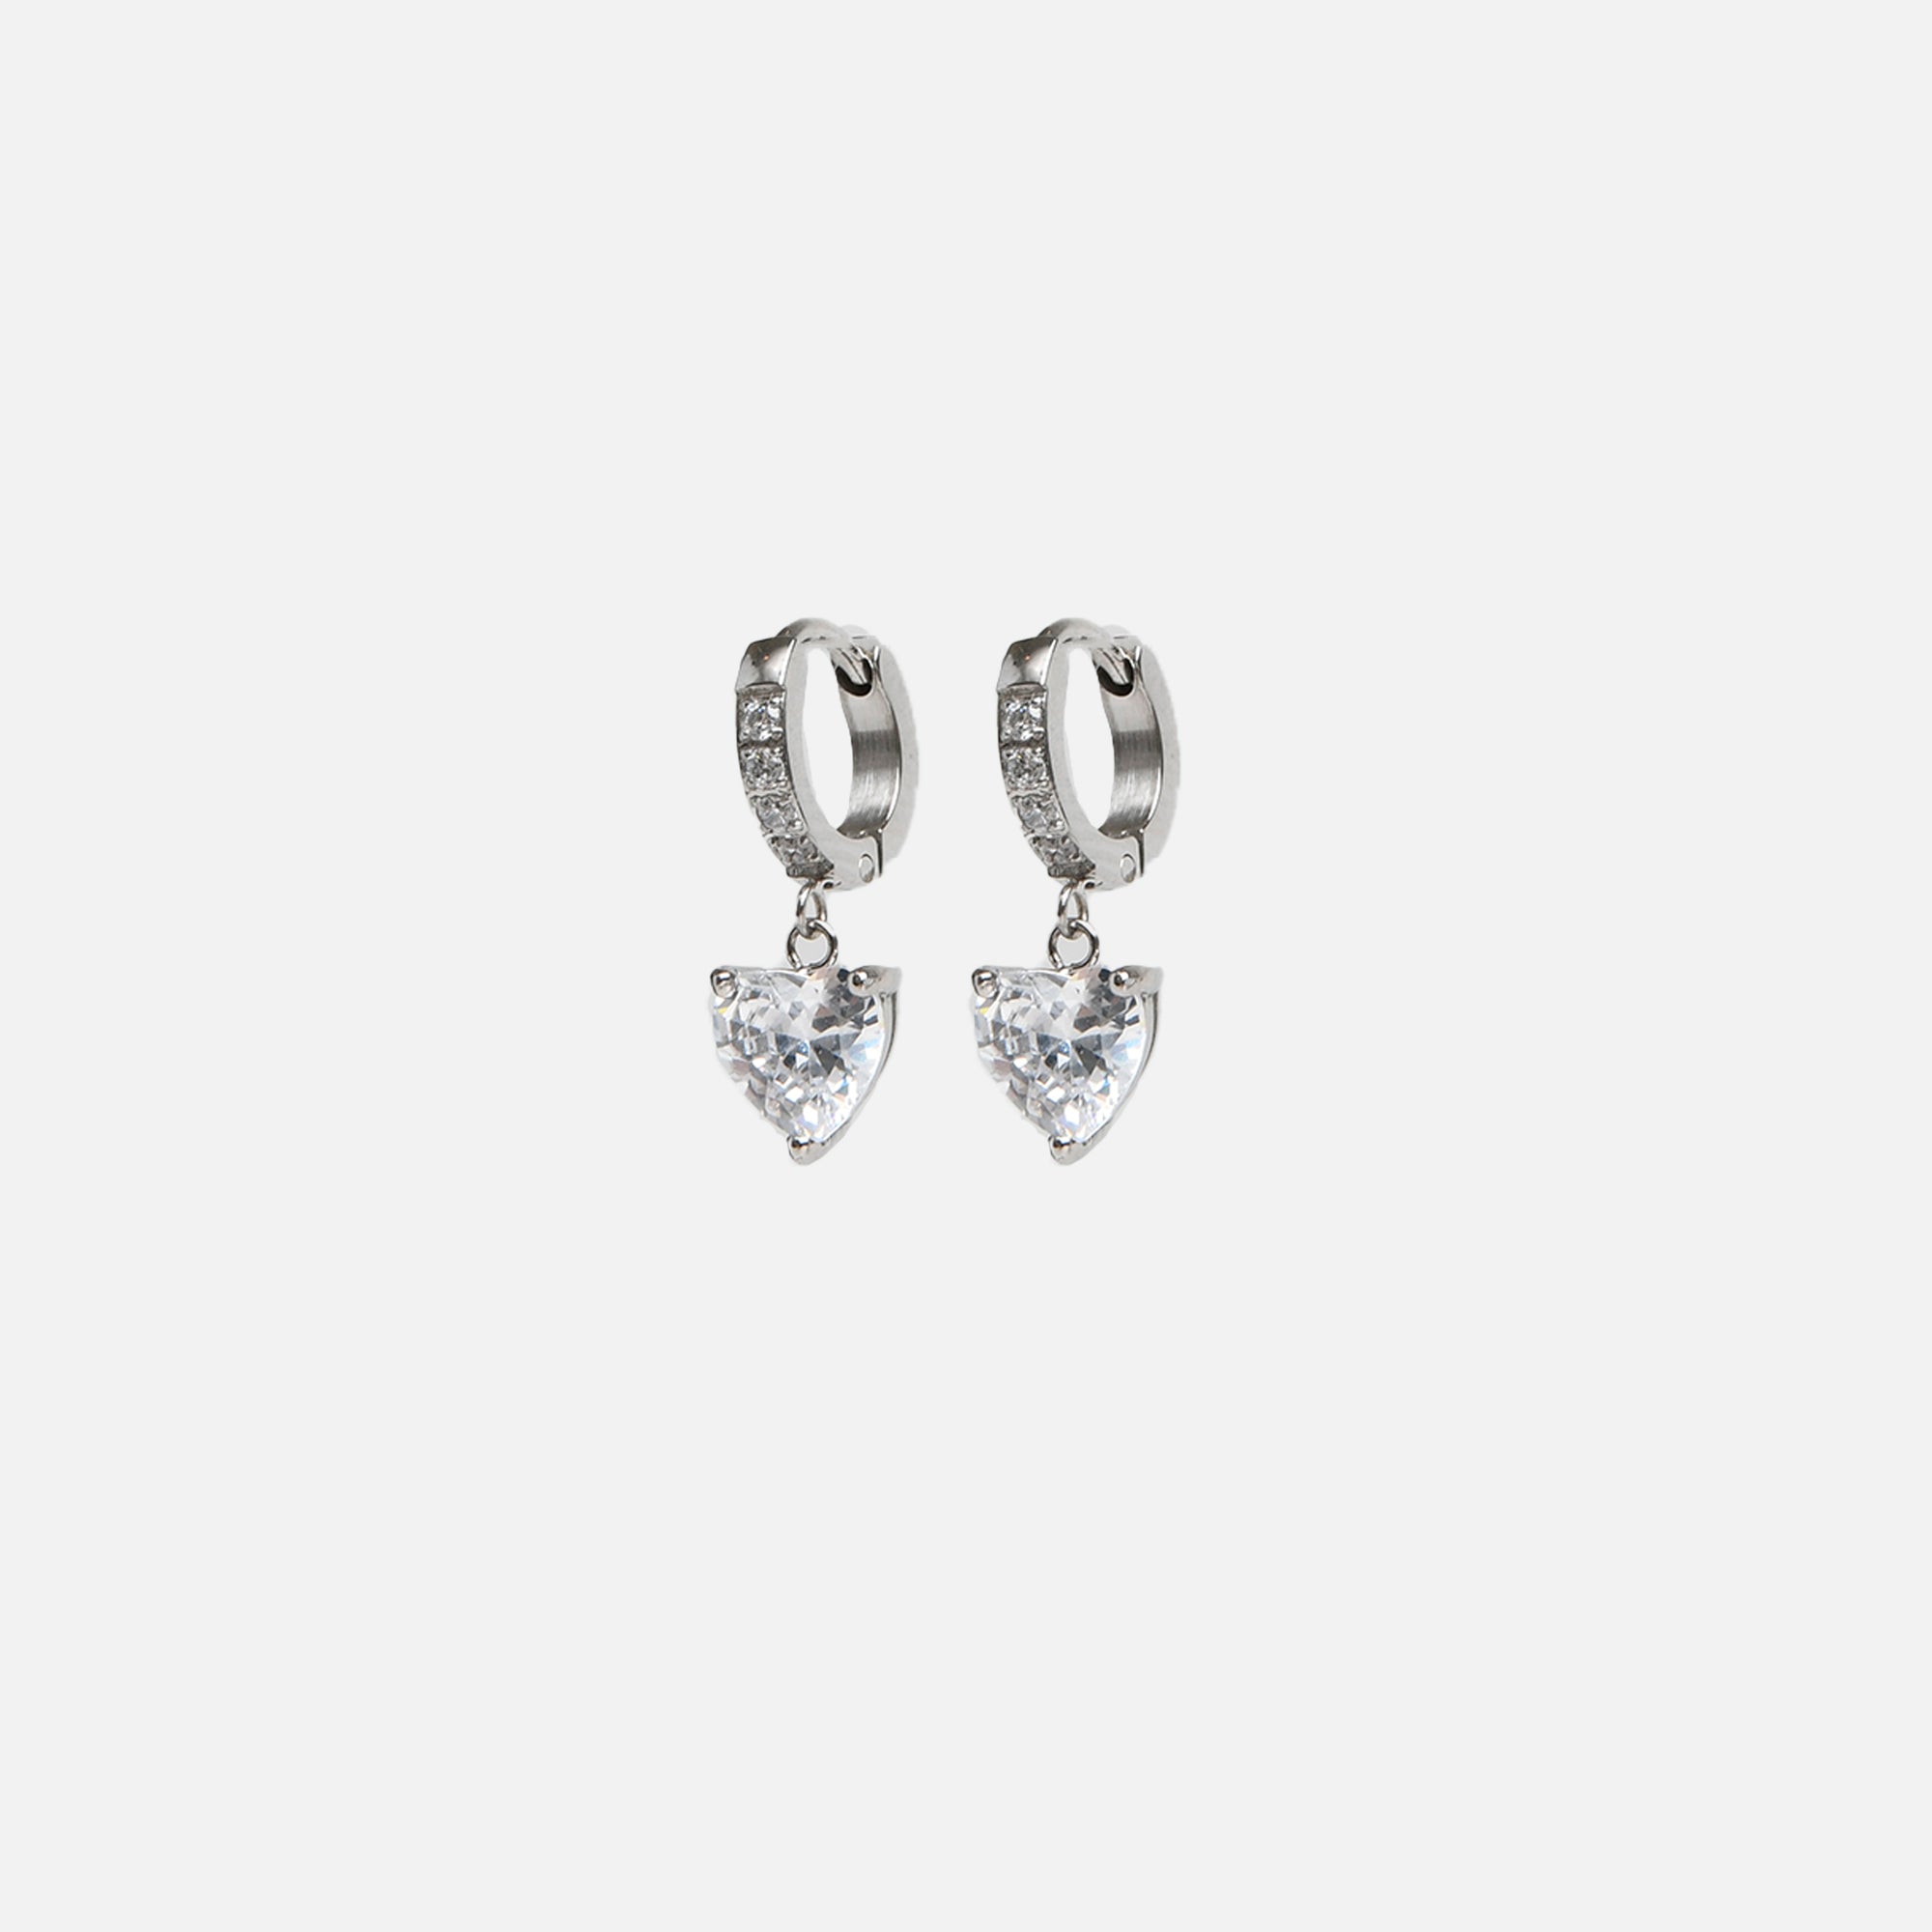 Boucles d’oreilles anneaux argentés avec breloque cœur en acier inoxydable